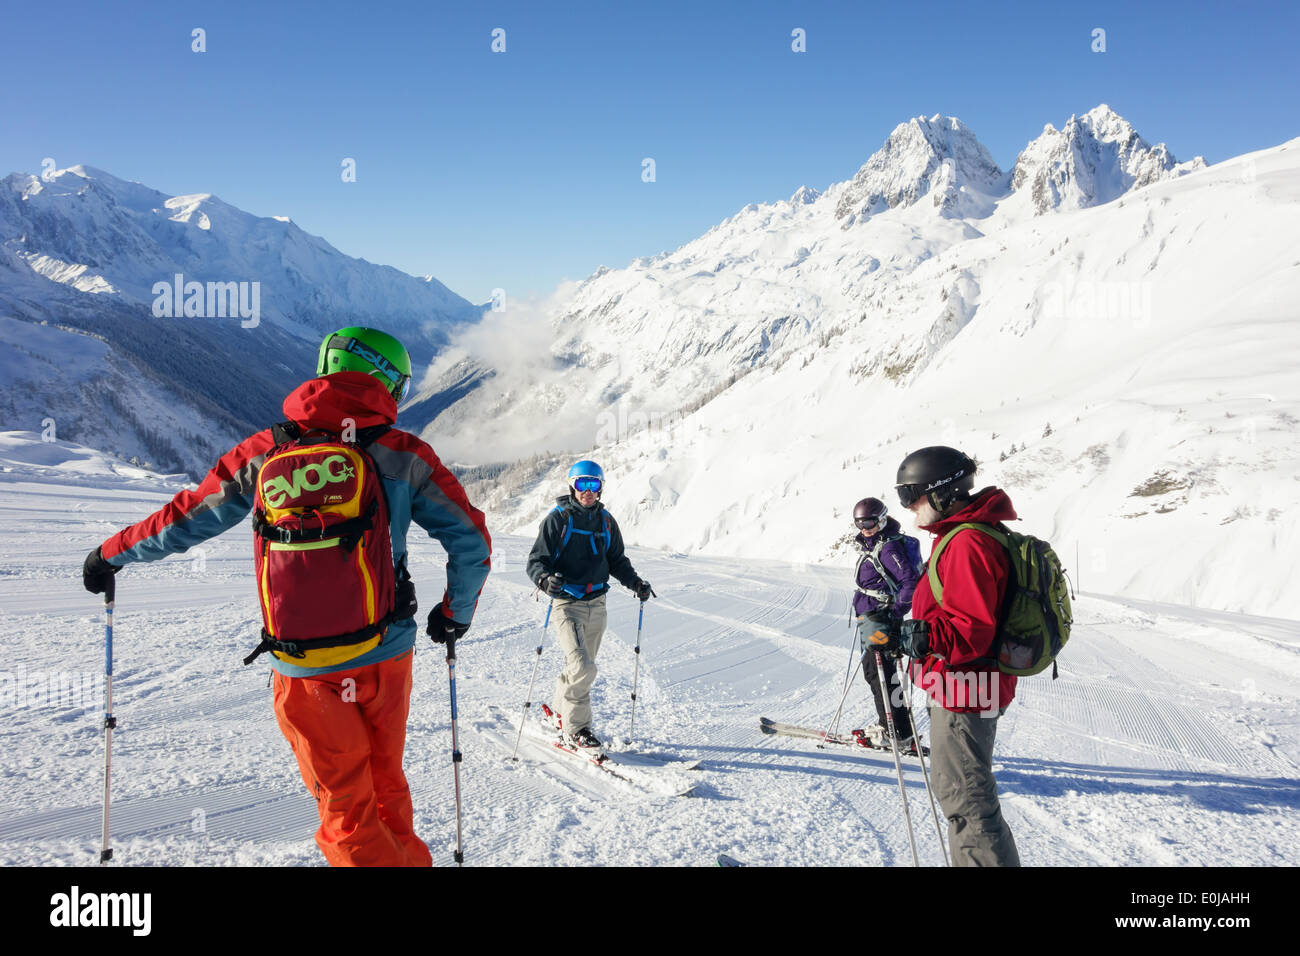 Guide de ski avalanche ABS avec sac à dos pour la sécurité sur les pistes de ski Le Tour à Chamonix-Mont-Blanc Haute Savoie France Europe Banque D'Images